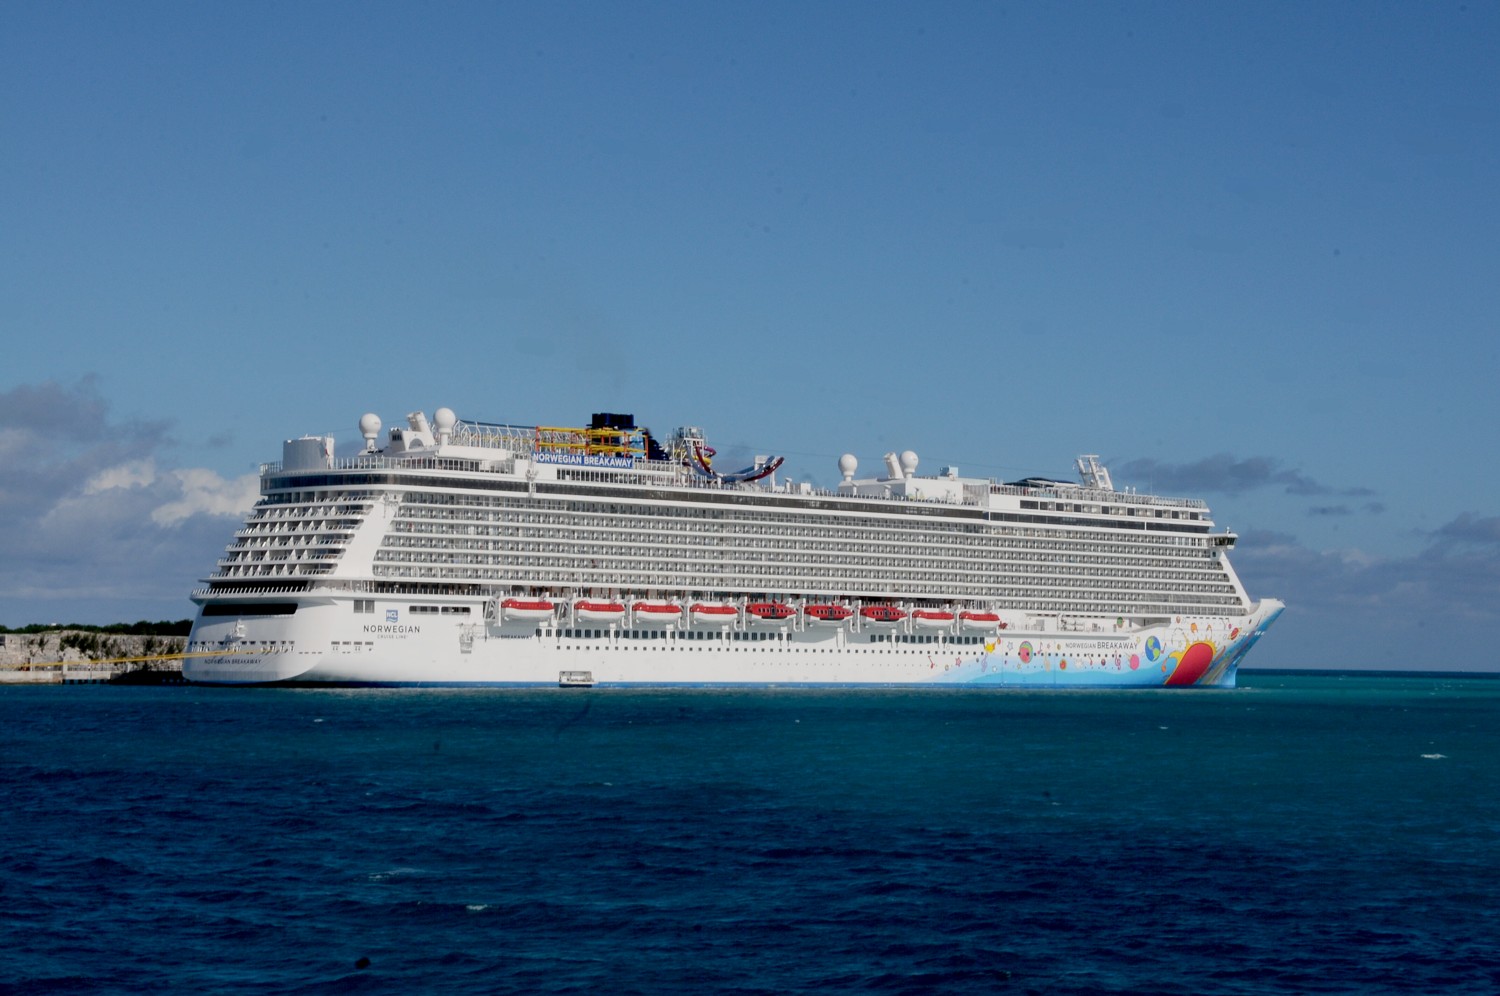 Norwegian Cruise Lines' Breakaway